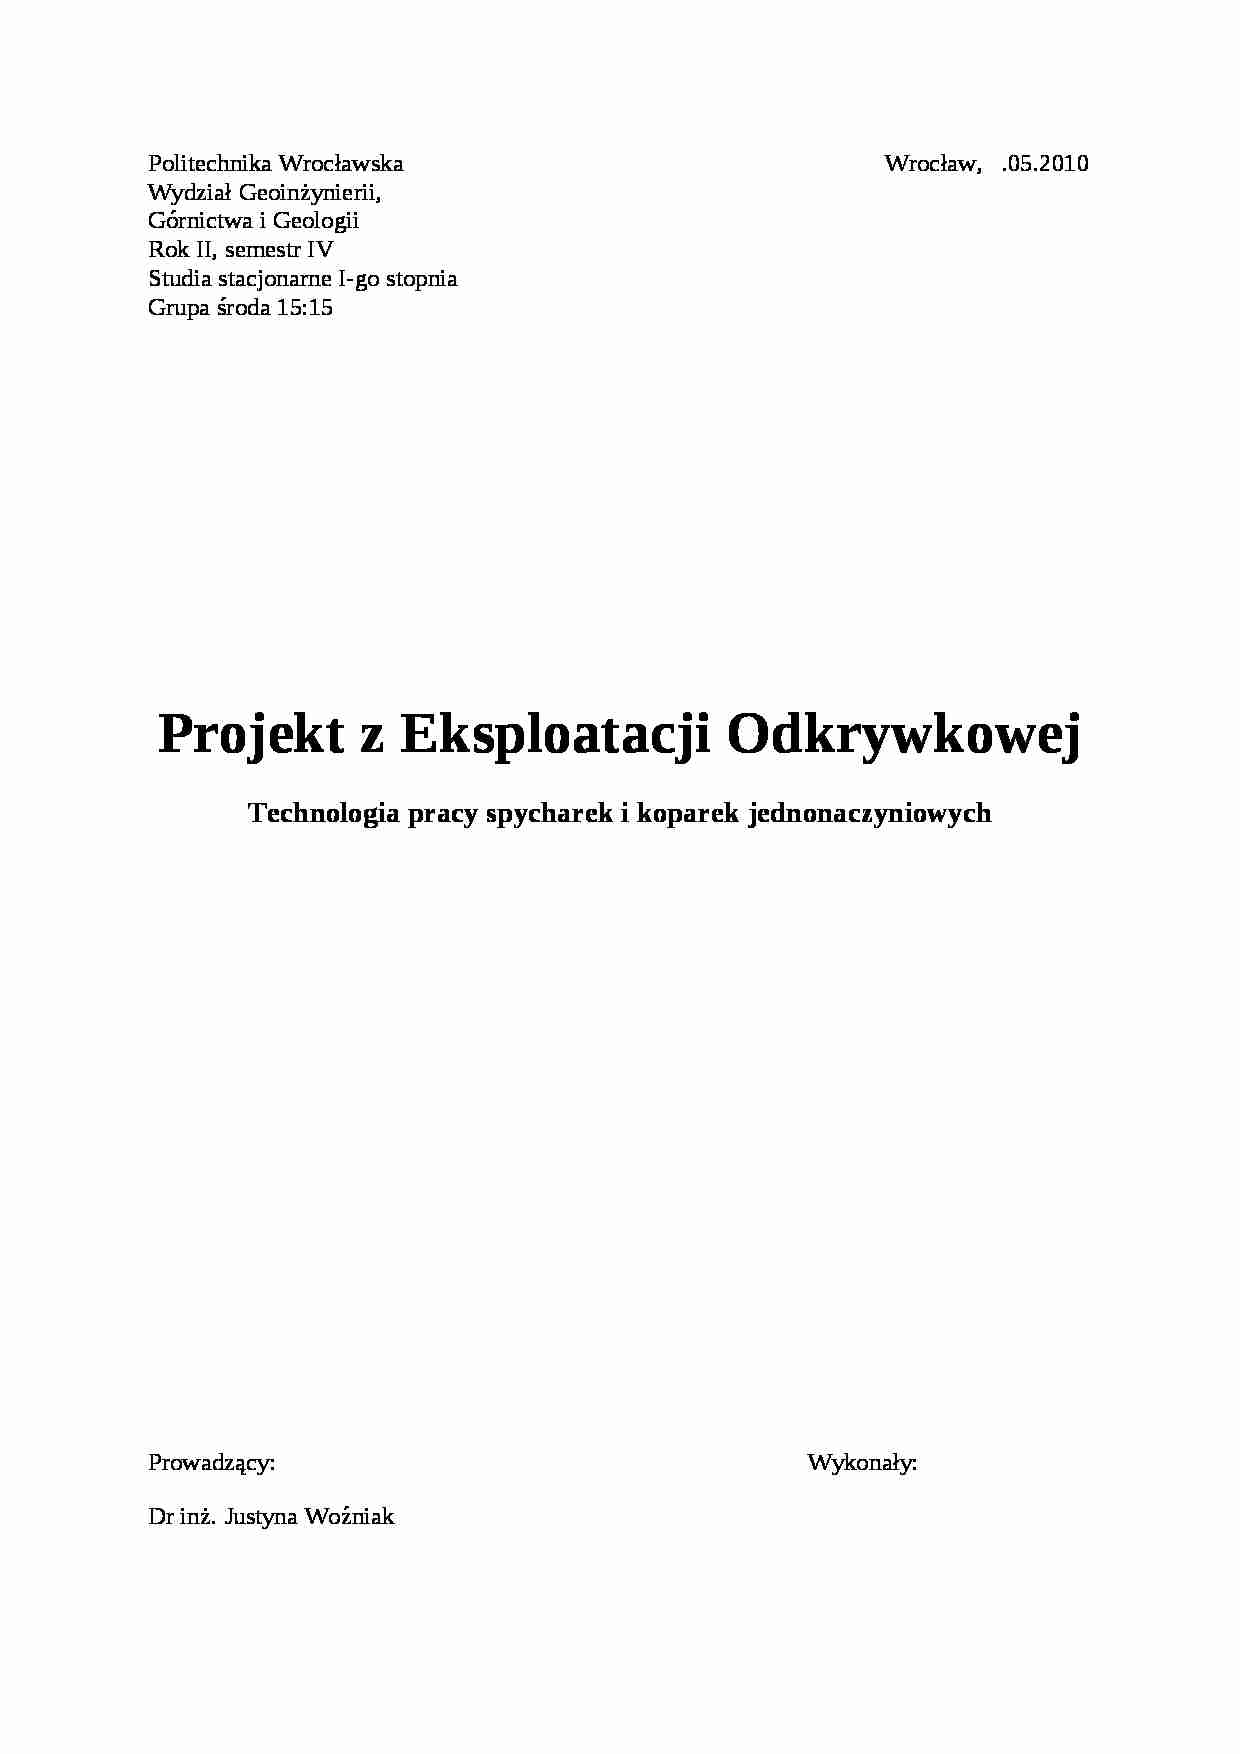 Technologia pracy spycharek i koparek jednonaczyniowych - projekt - strona 1